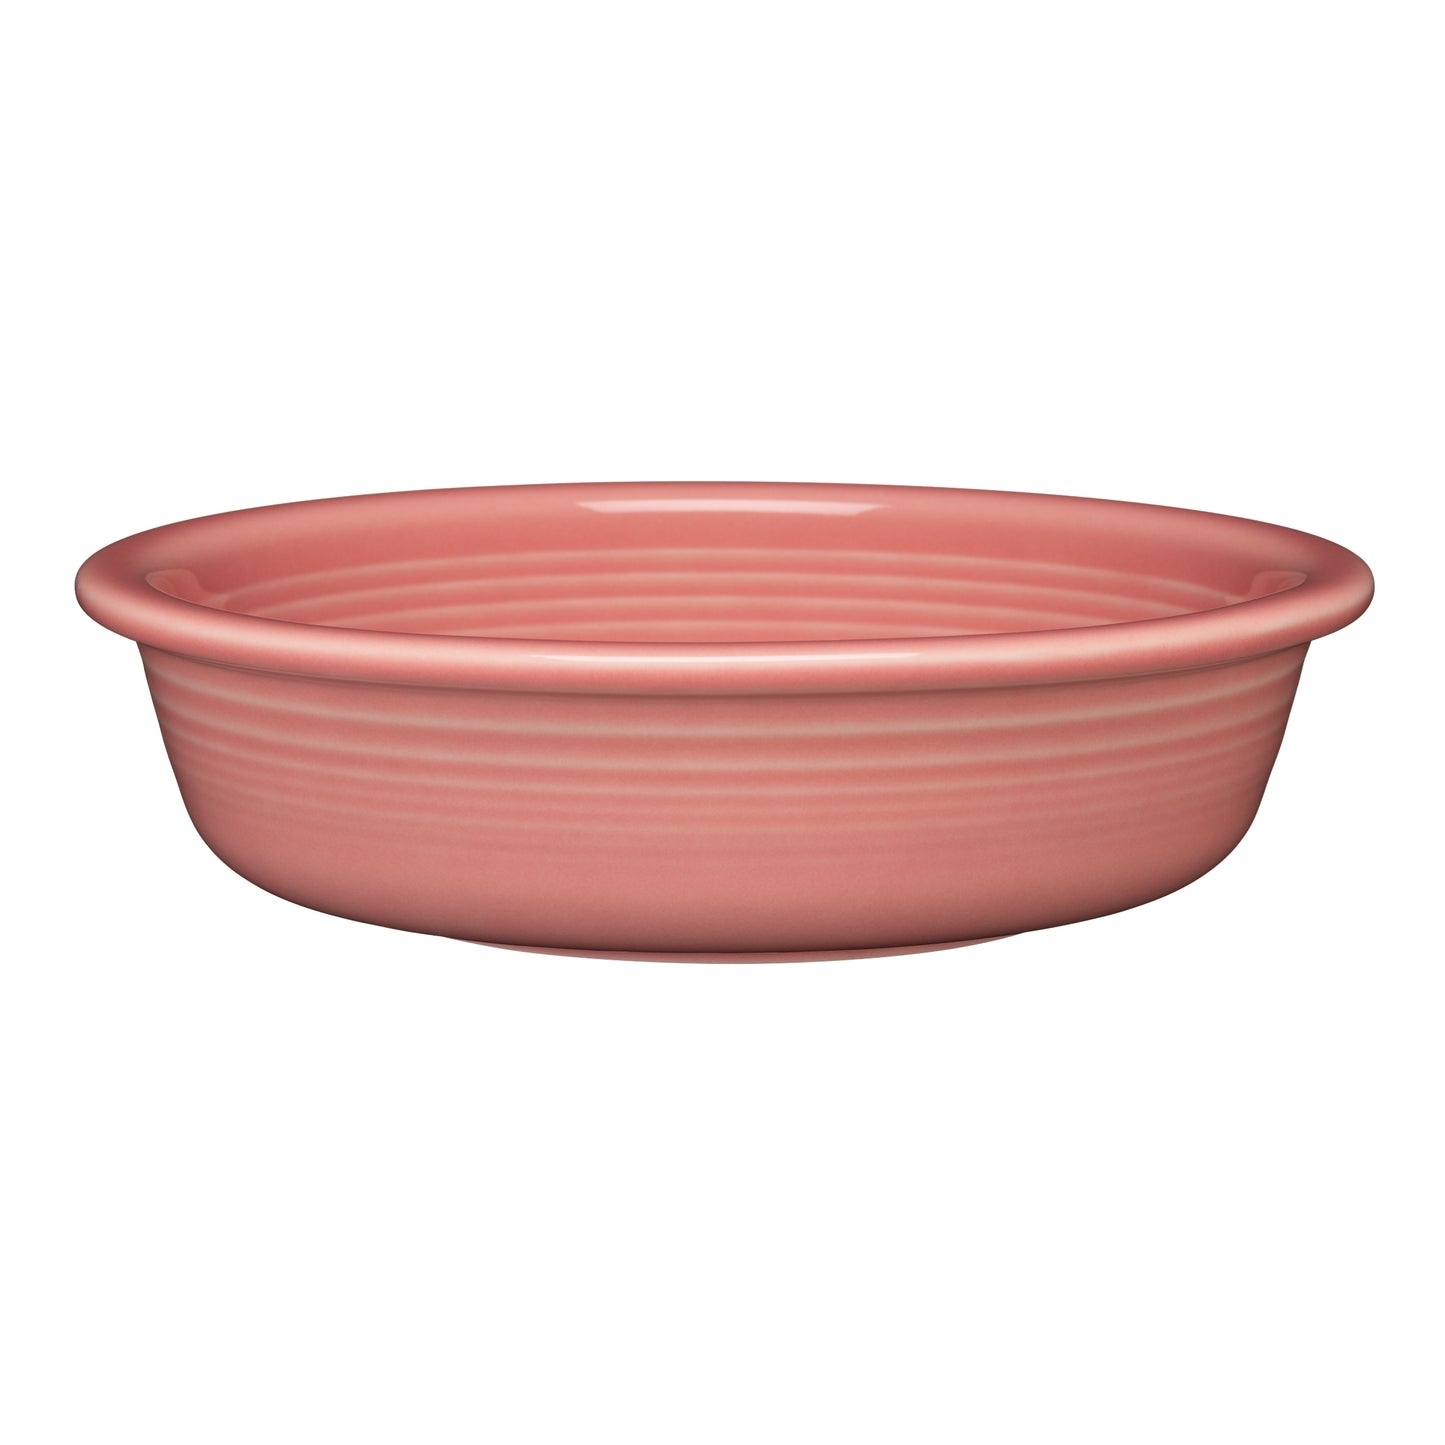 Fiesta®  Medium Bowl